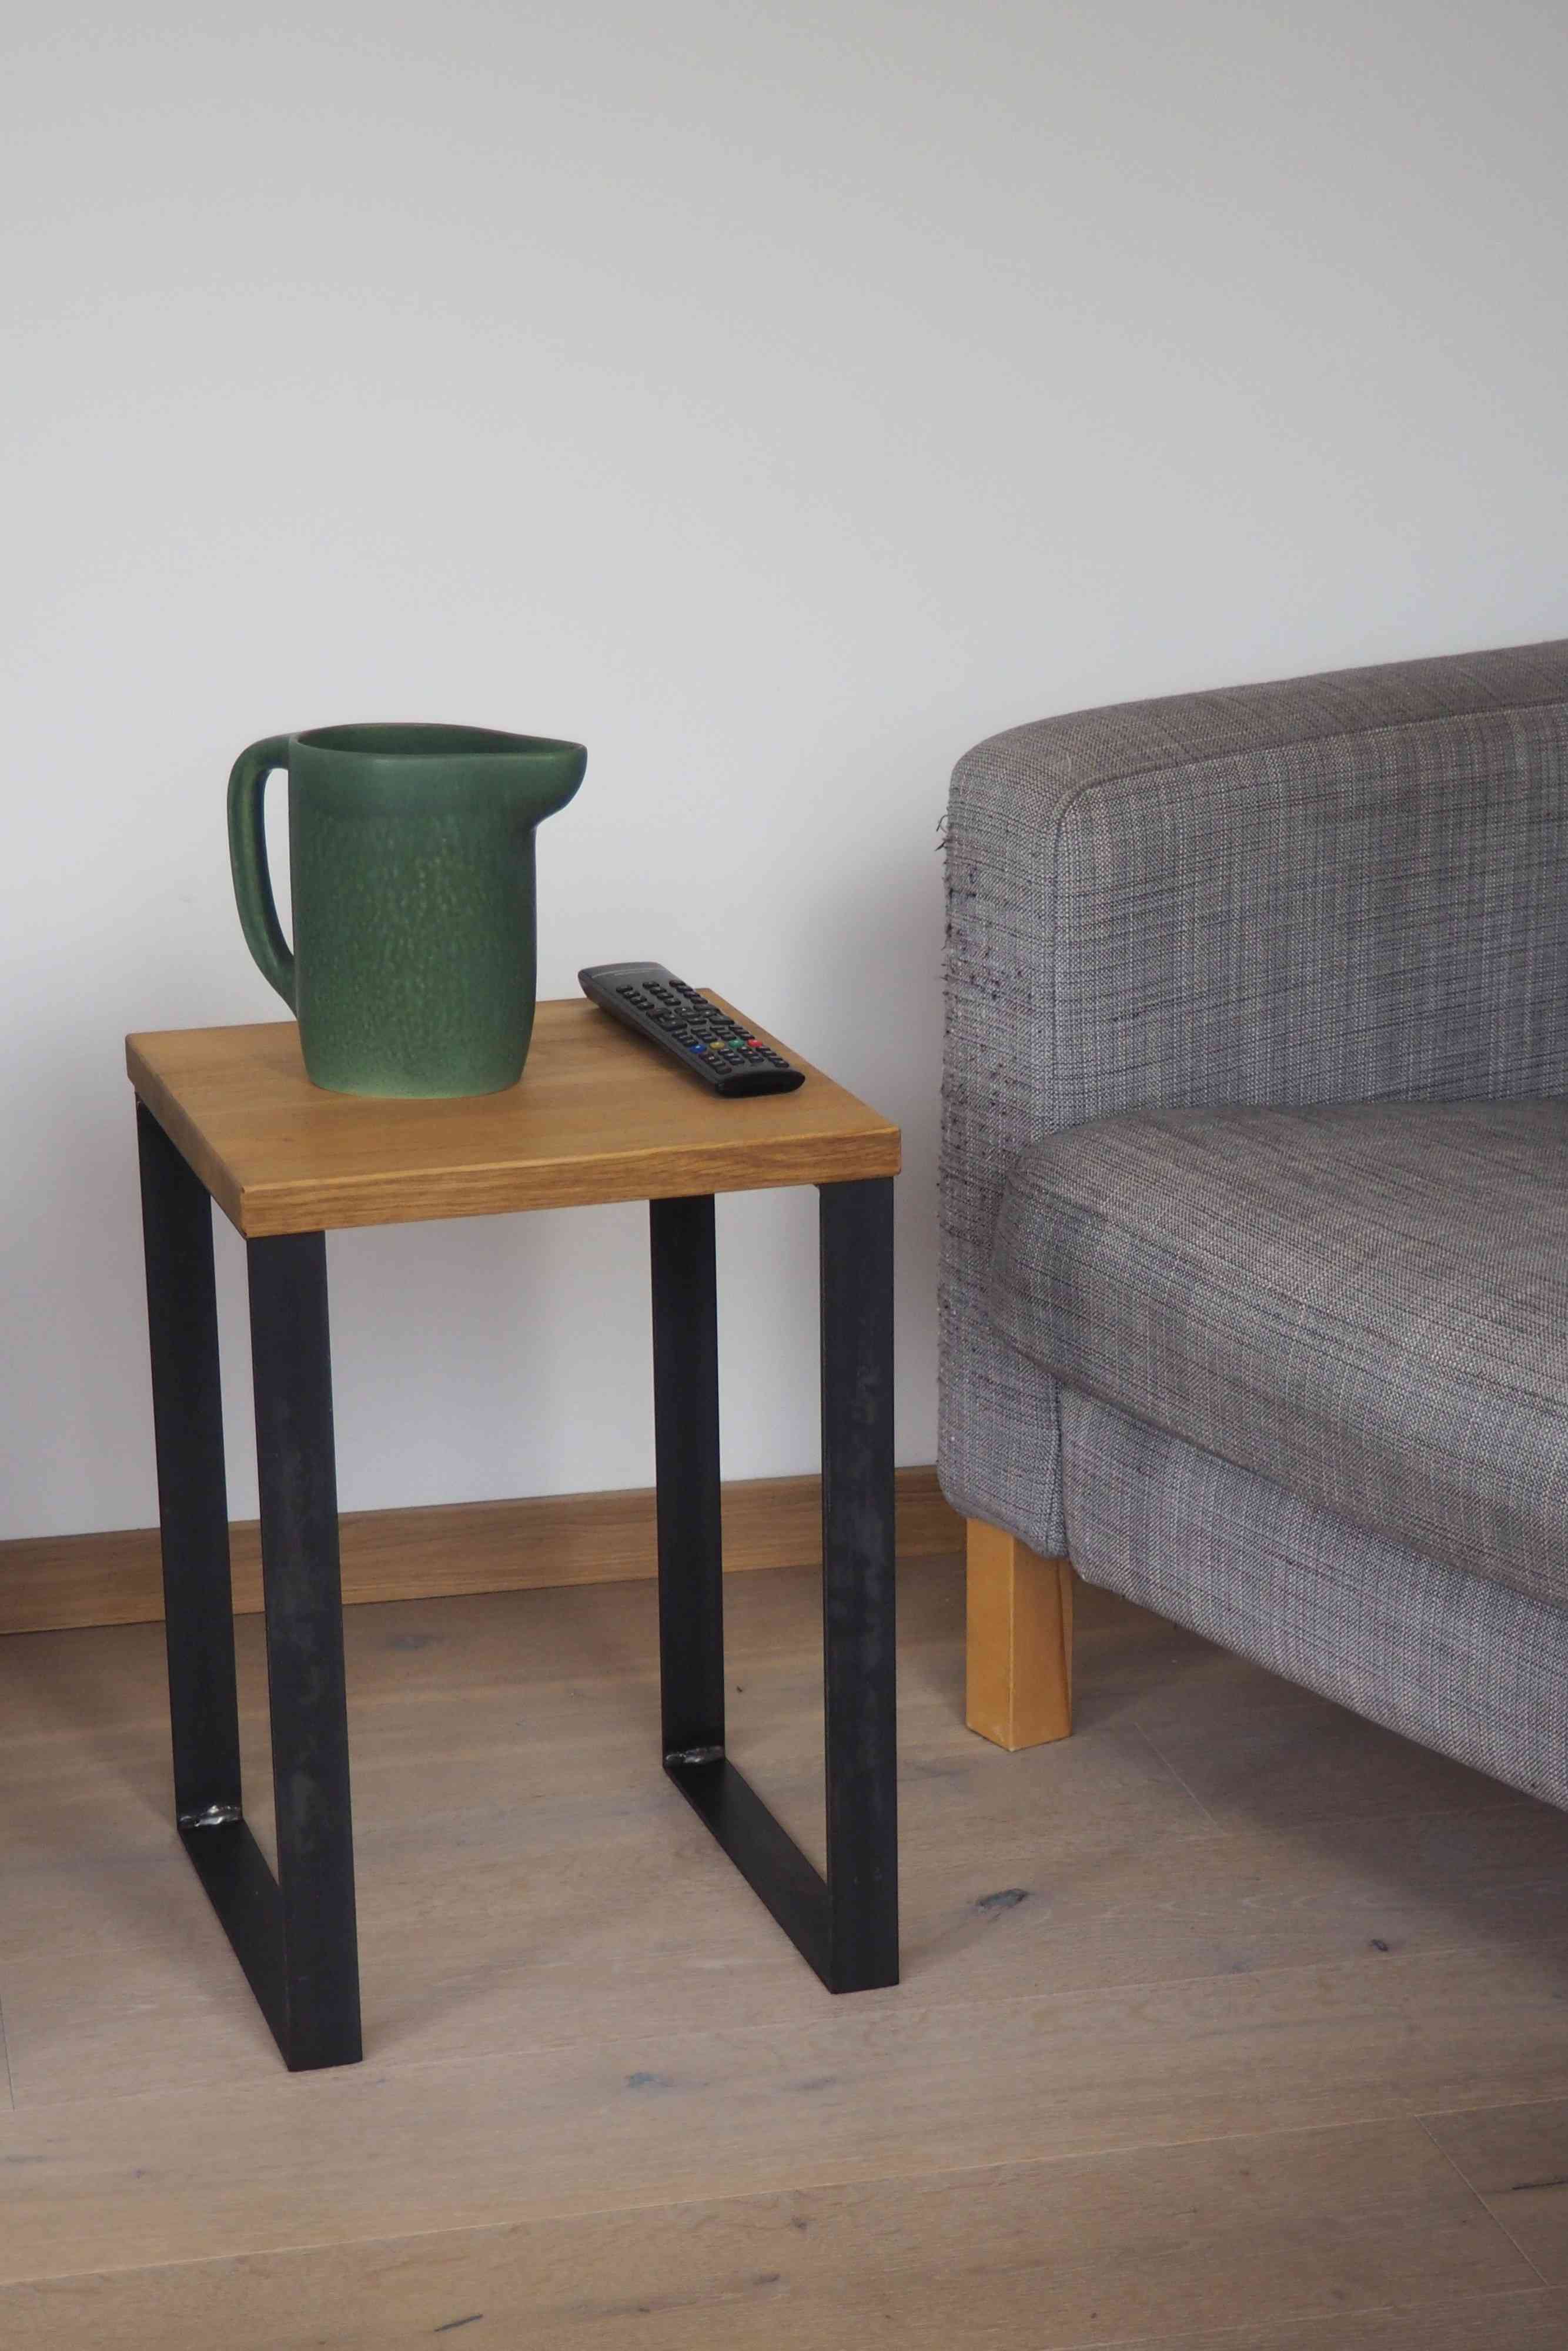 Hocker, Stool als Bestelltisch aus Wild-Eiche und Stahl (schwarz) - Möbel in schlichtem Design